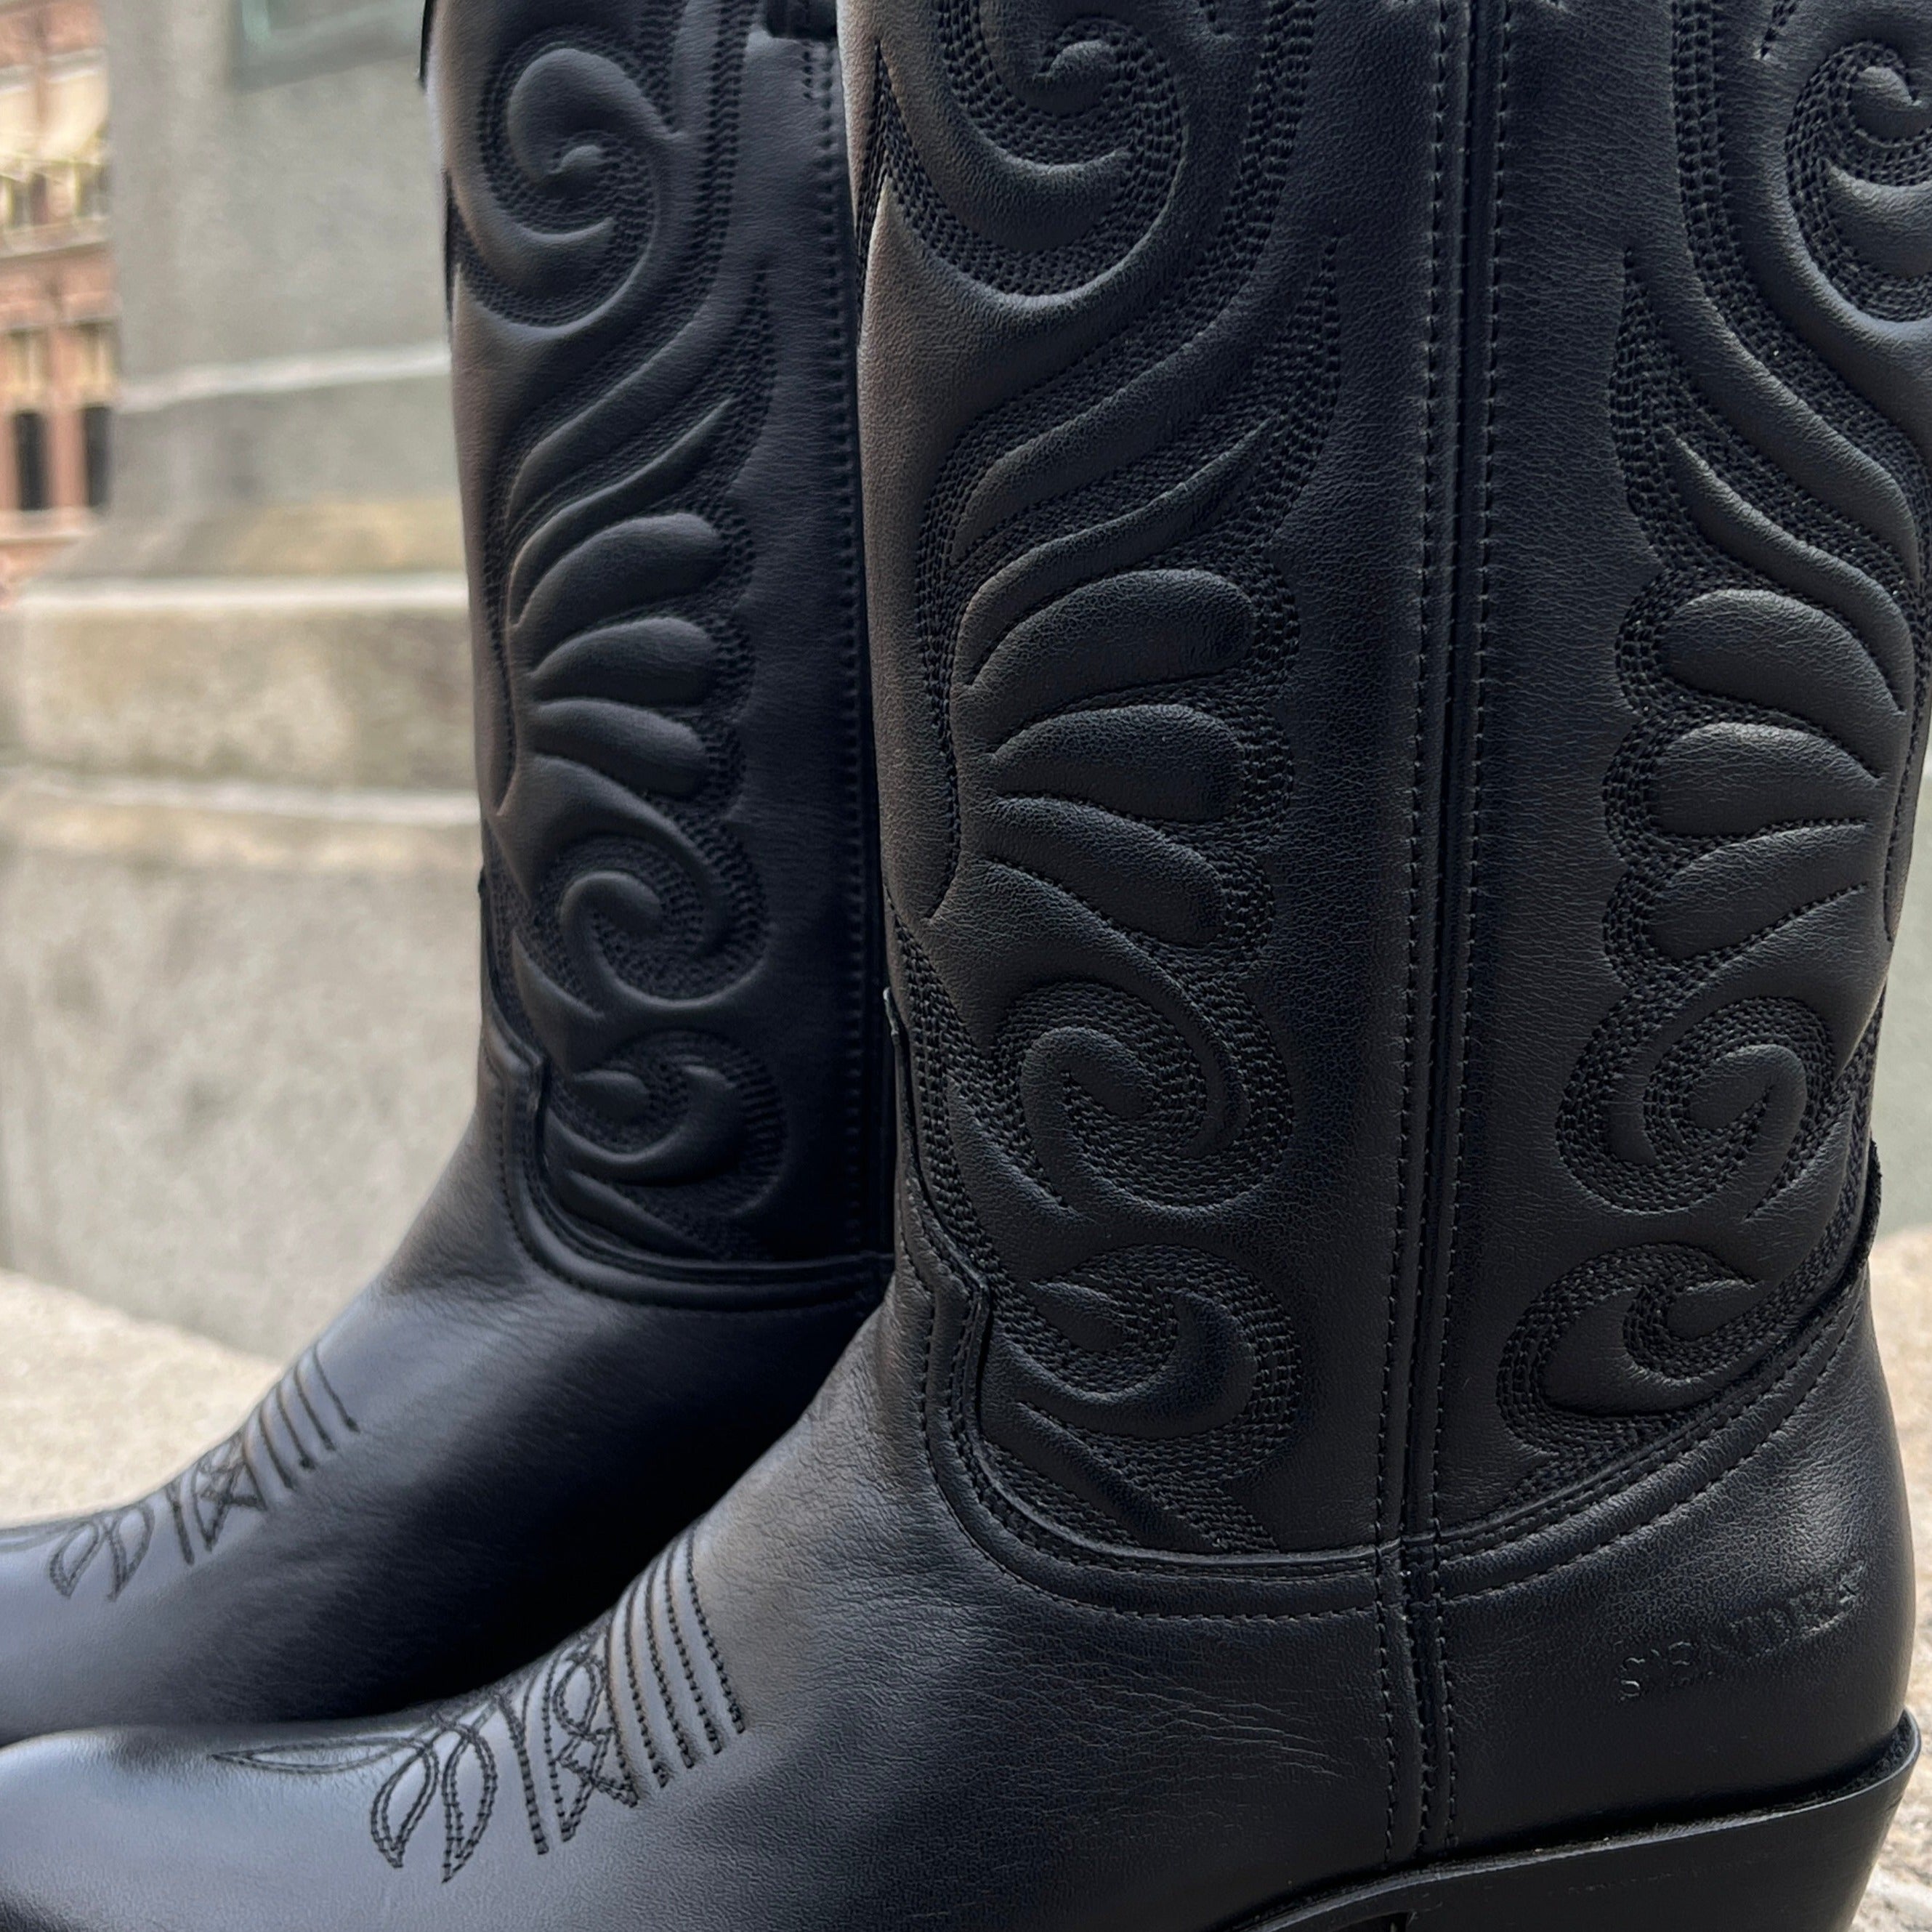 Debora cowboy boots - black